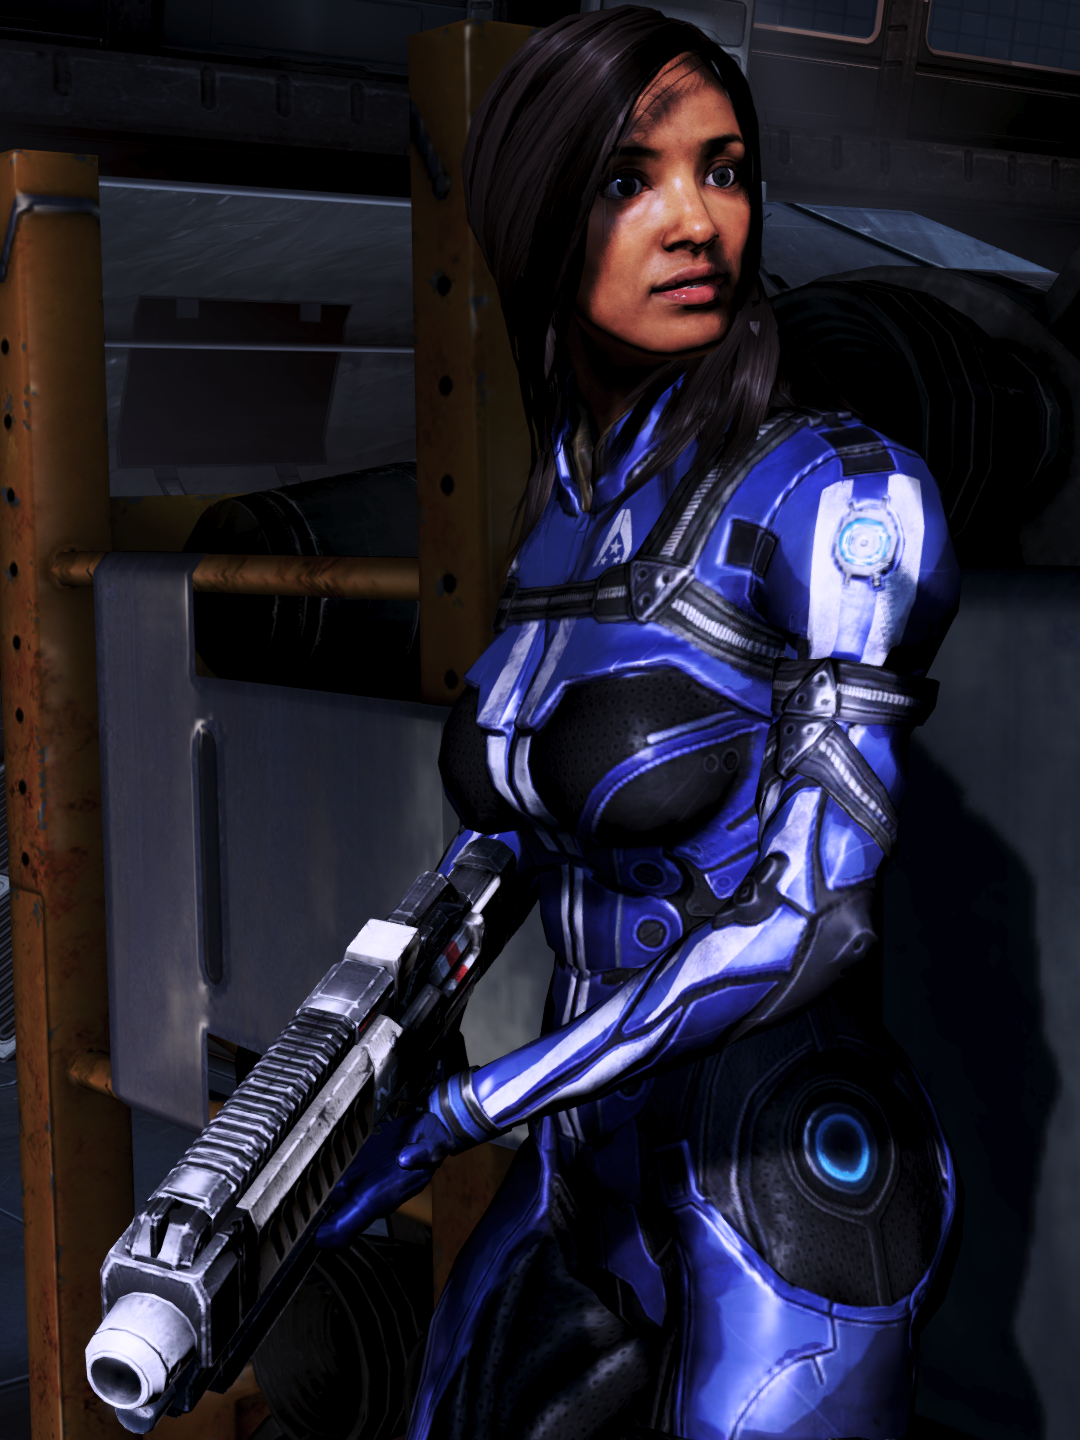 Maya Brooks Mass Effect Wiki Mass Effect Mass Effect 2 Mass Effect 3 Walkthroughs And More